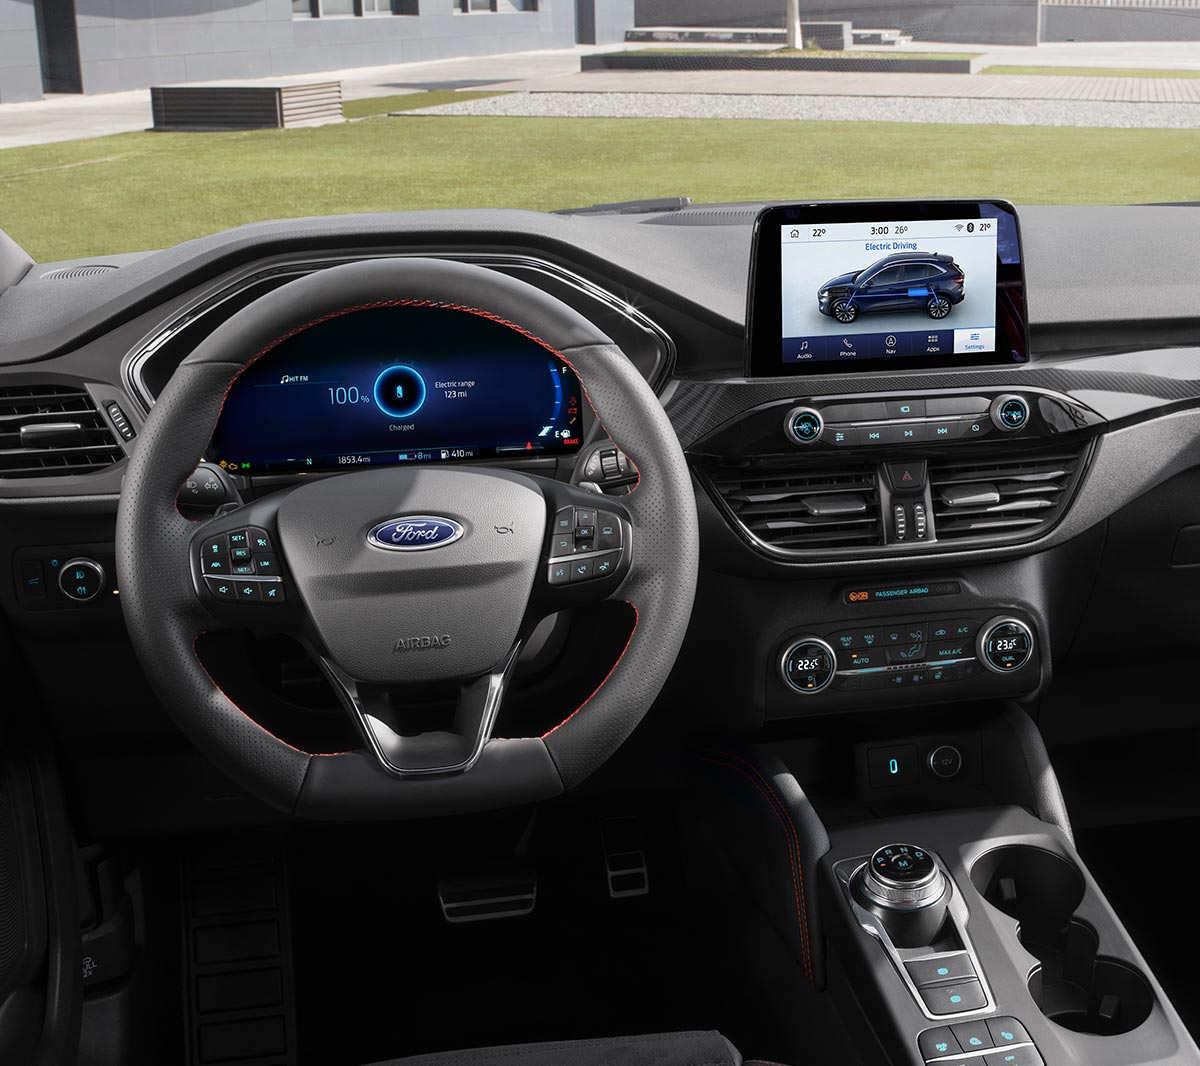 Ford Kuga. Detailansicht des Cockpits mit digitaler Instrumententafel und Touchscreen